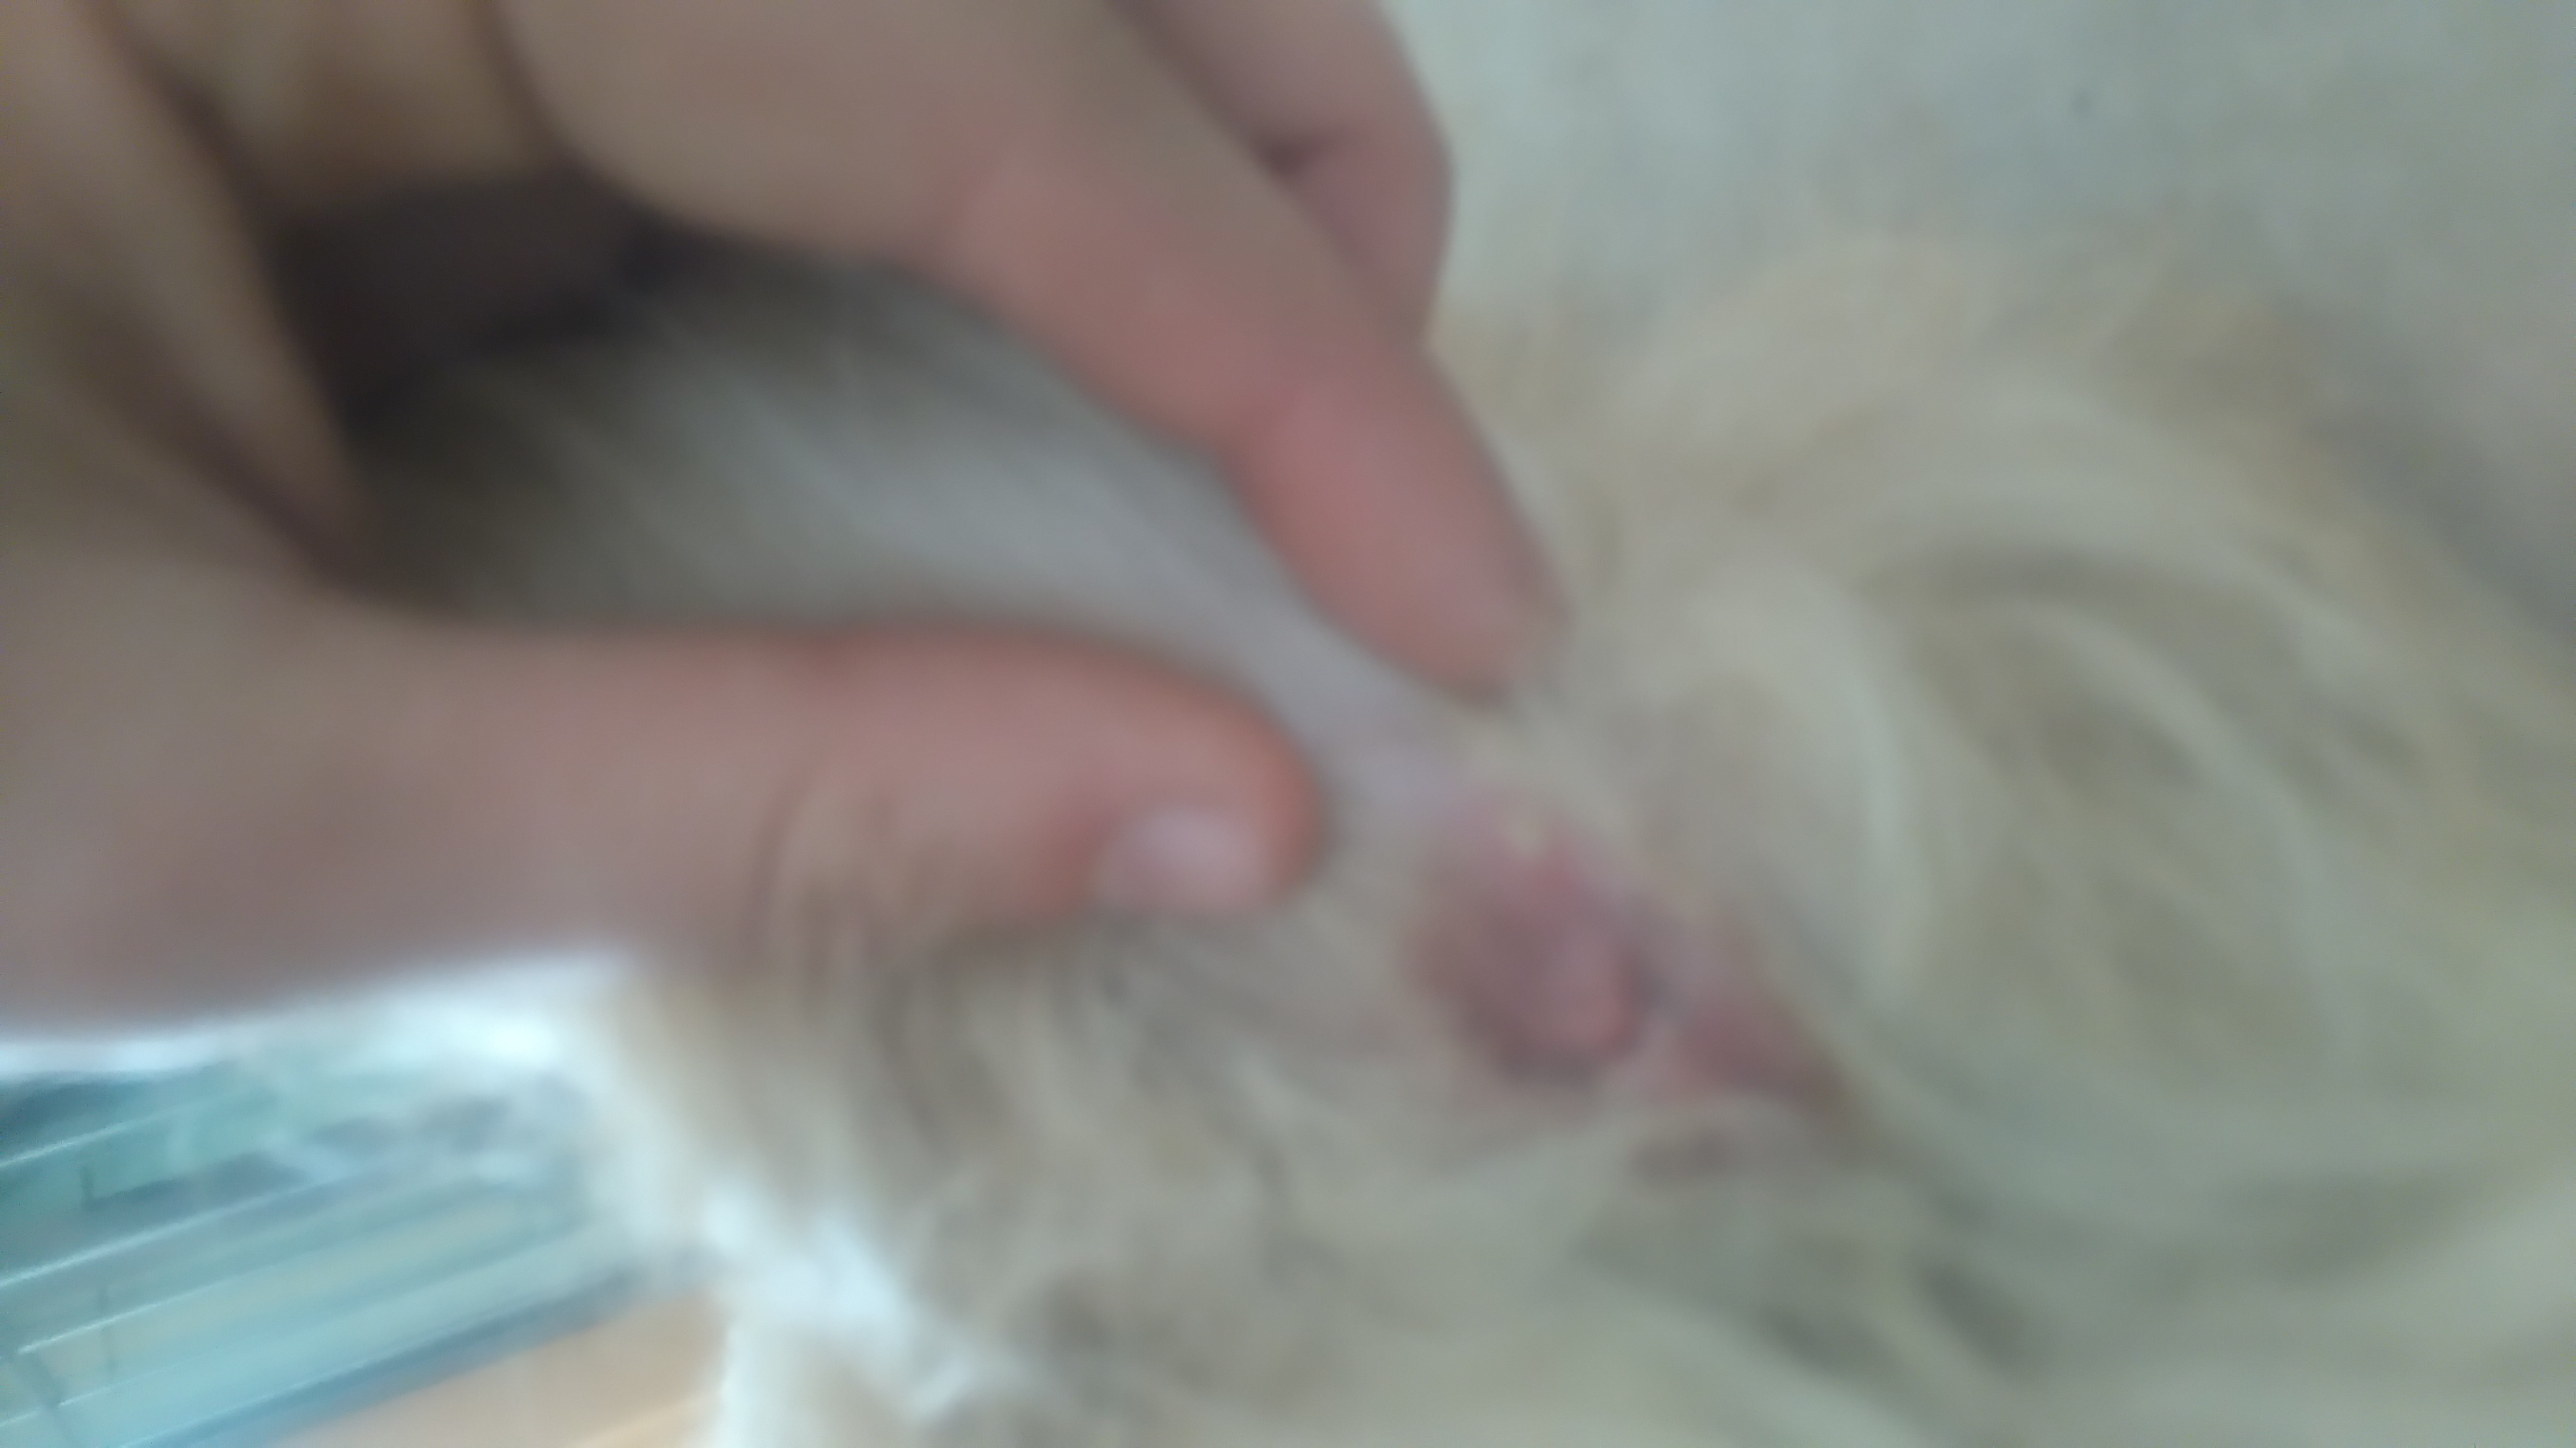 Hilfe, Unser Hund hat einen kleinen Eiter pickel etwas über den Popo